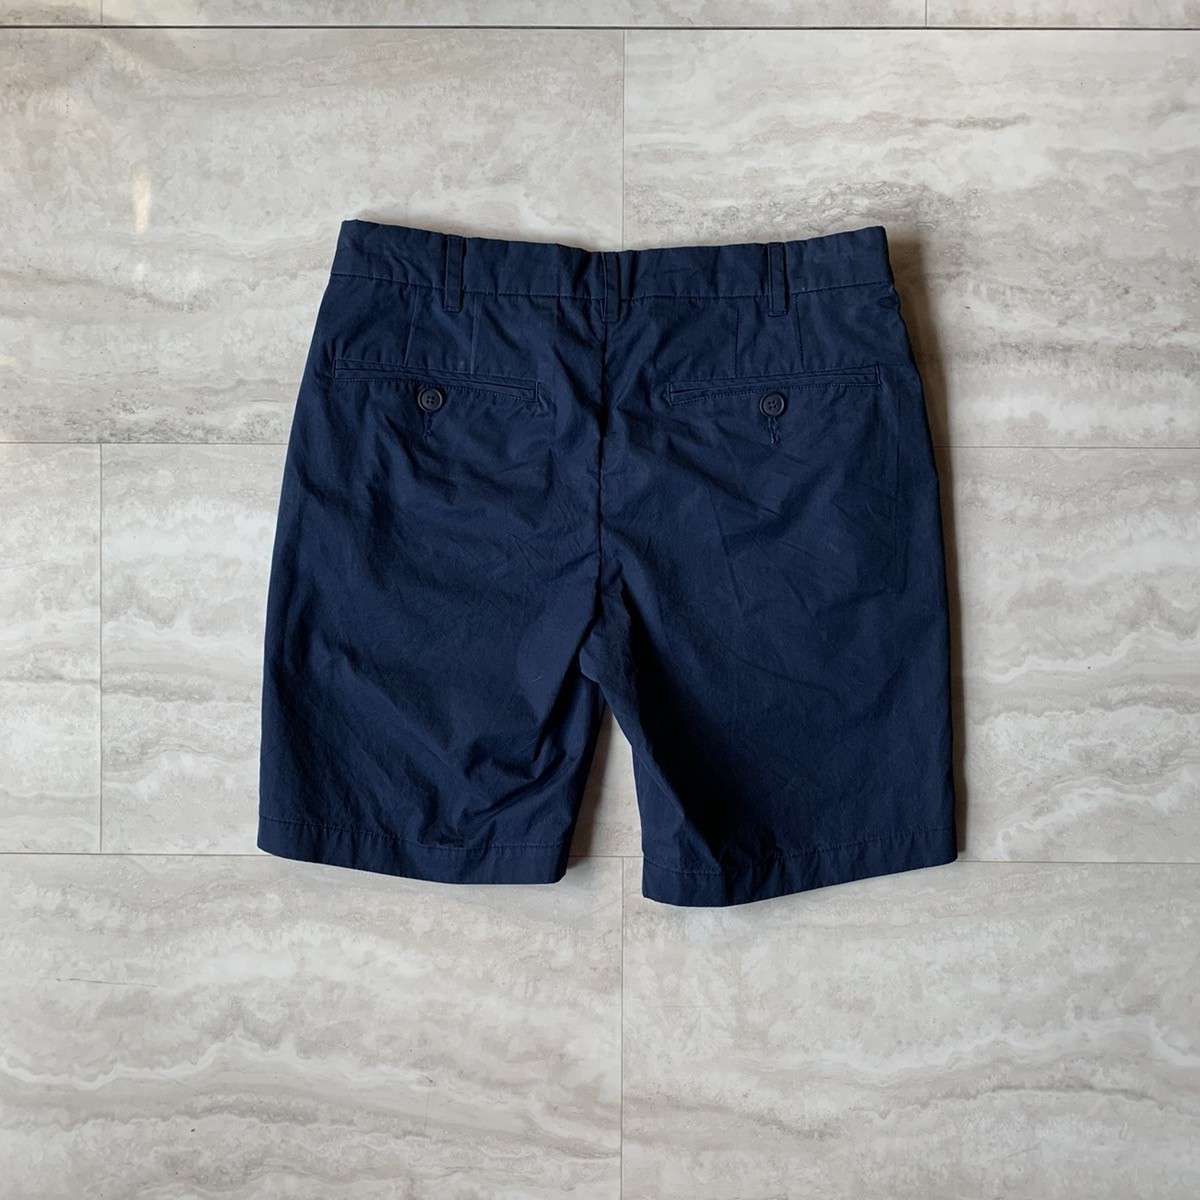 Craig green ss17 navy sailor shorts - 4